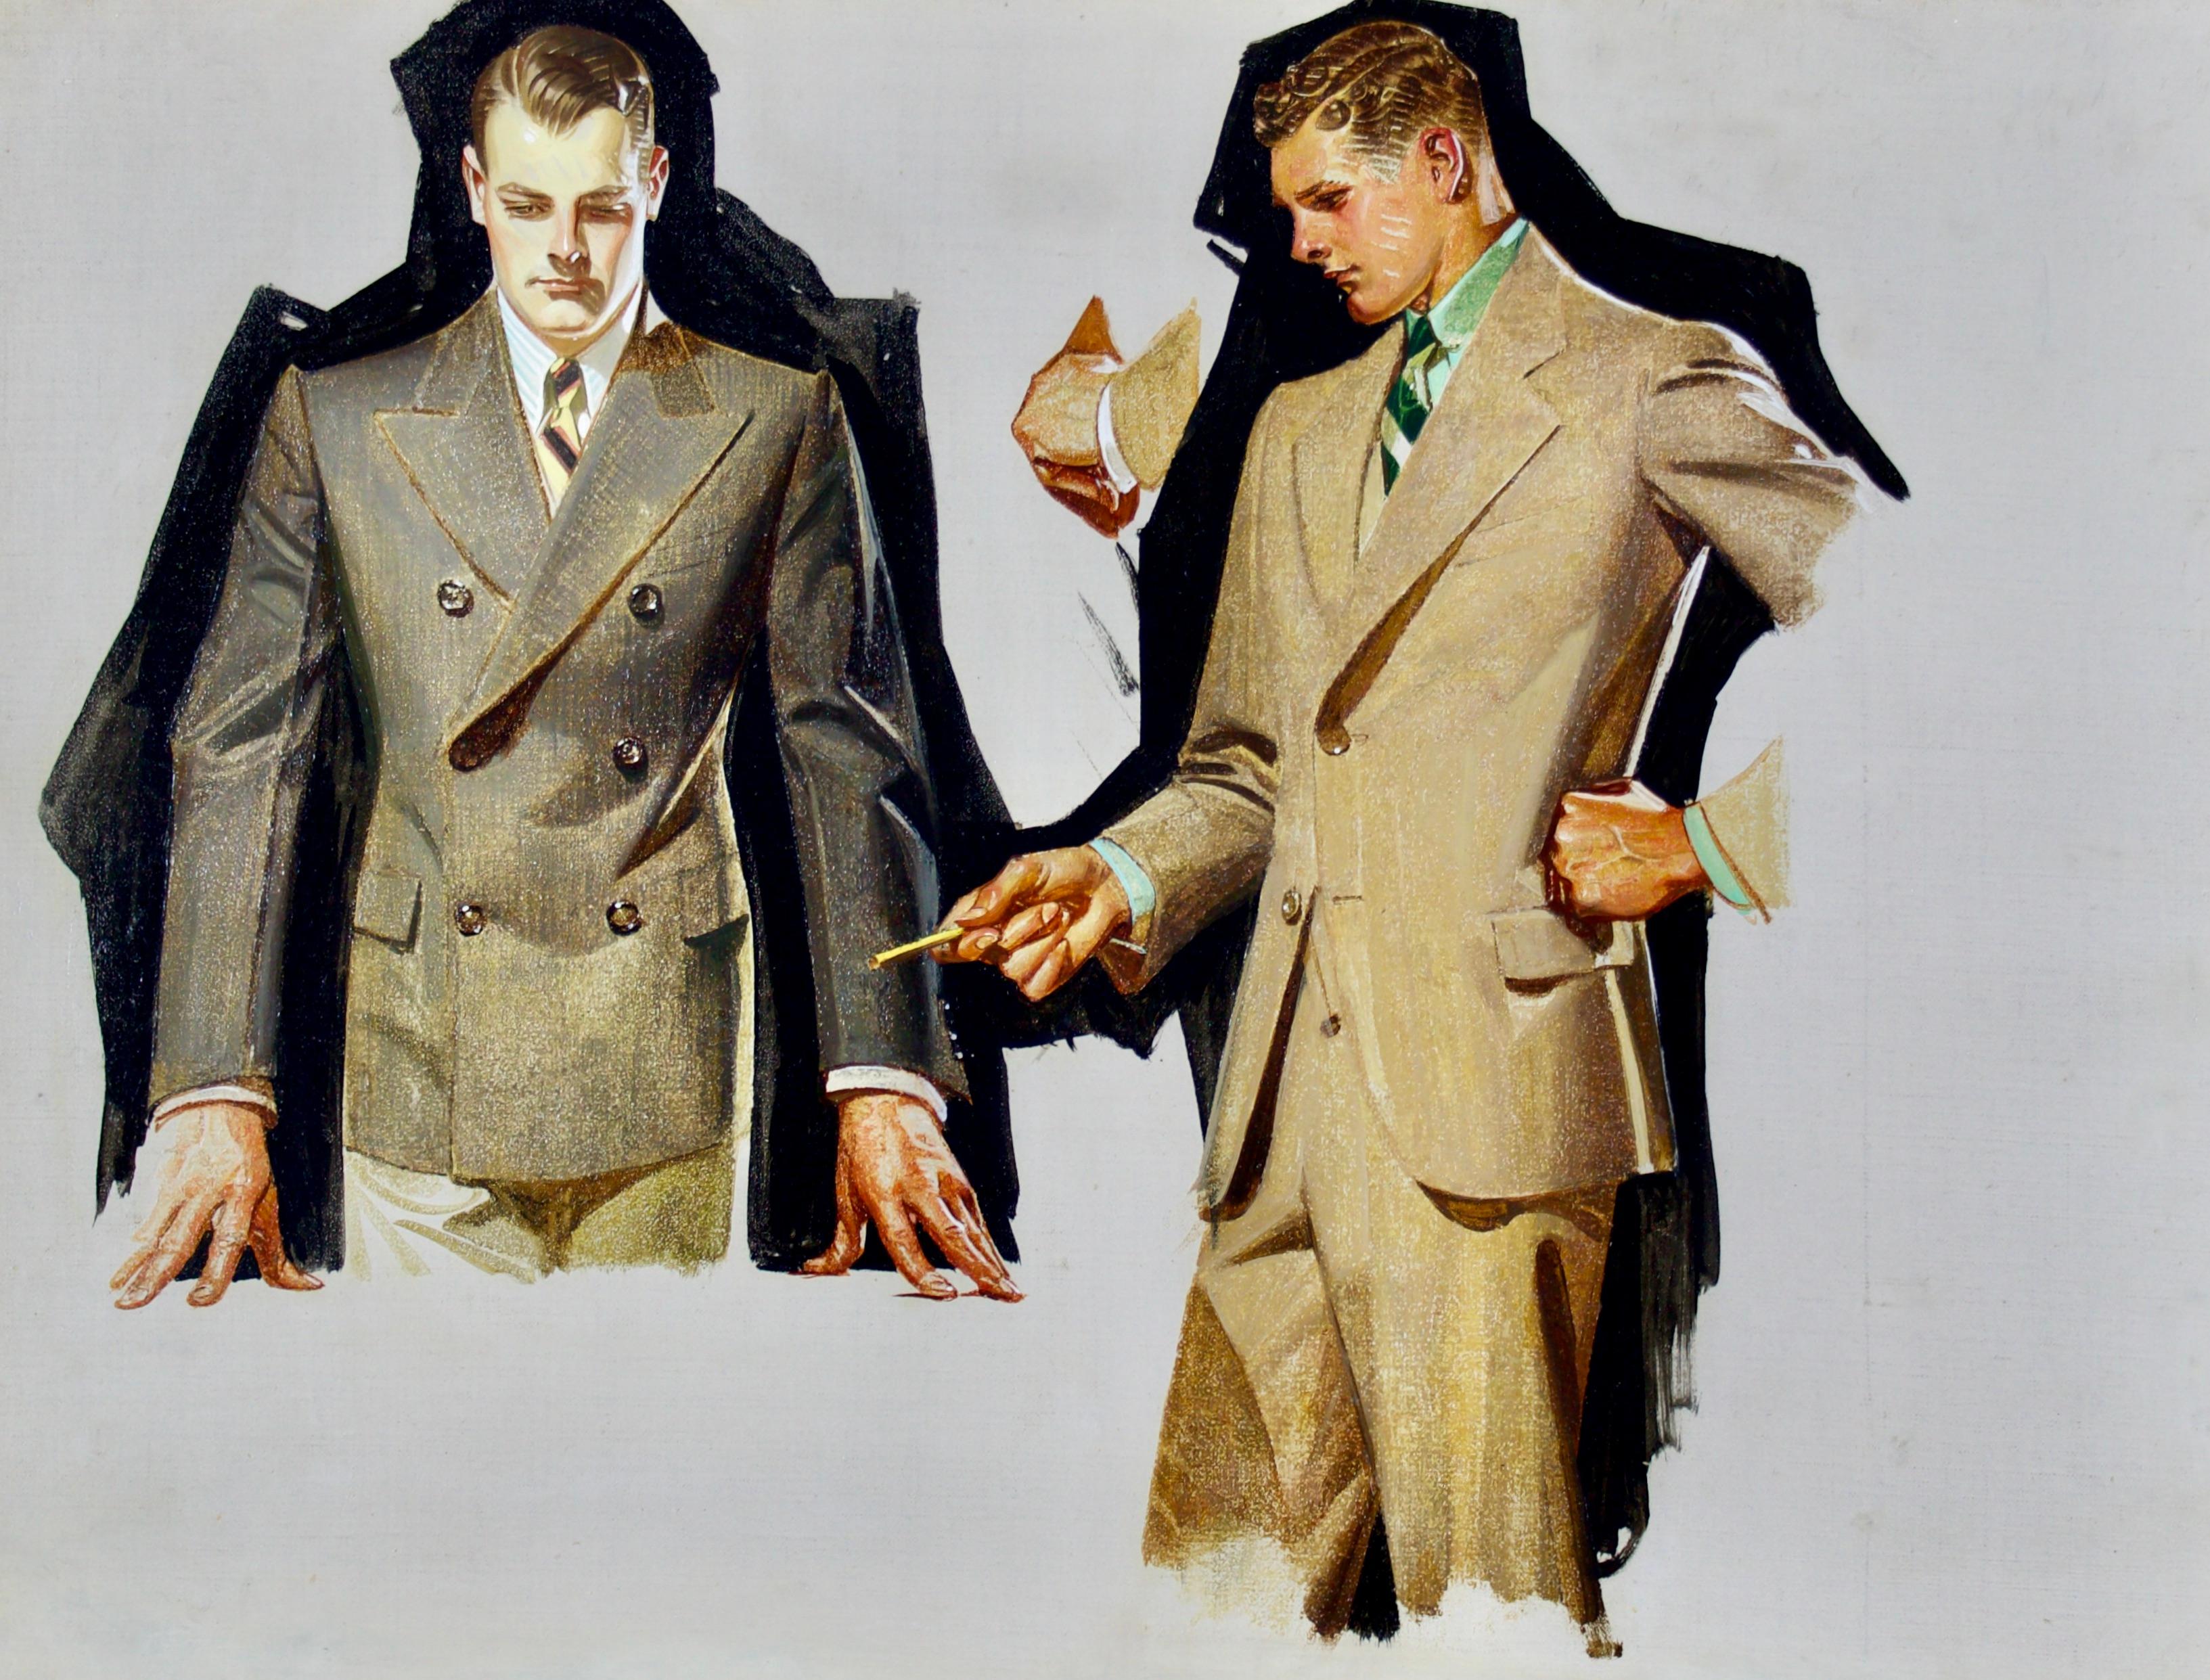 Kuppenheimer Men's Clothing Advertisement study - Painting by Joseph Christian Leyendecker